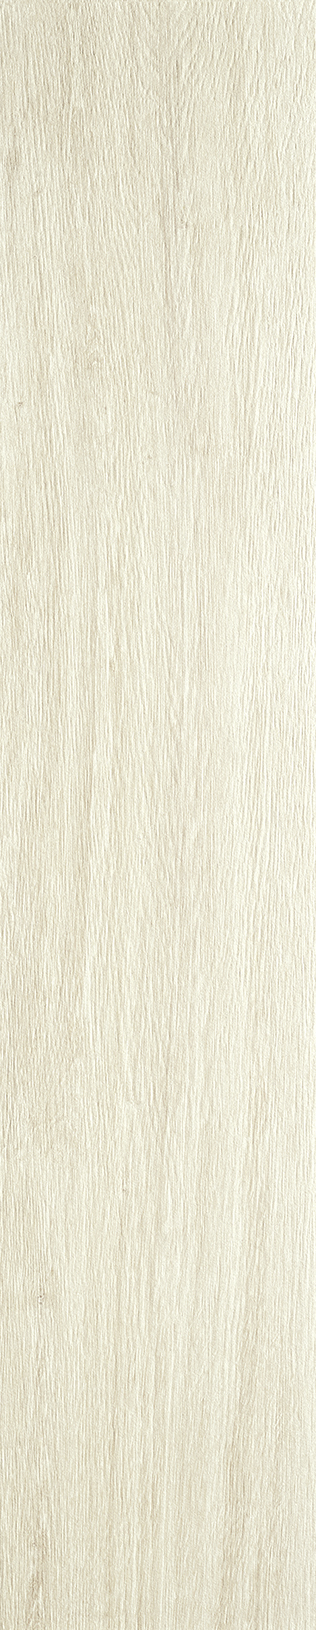 Lovetiles Timber White Antislip White B6090002001K rutschhemmend 20x100cm 8mm